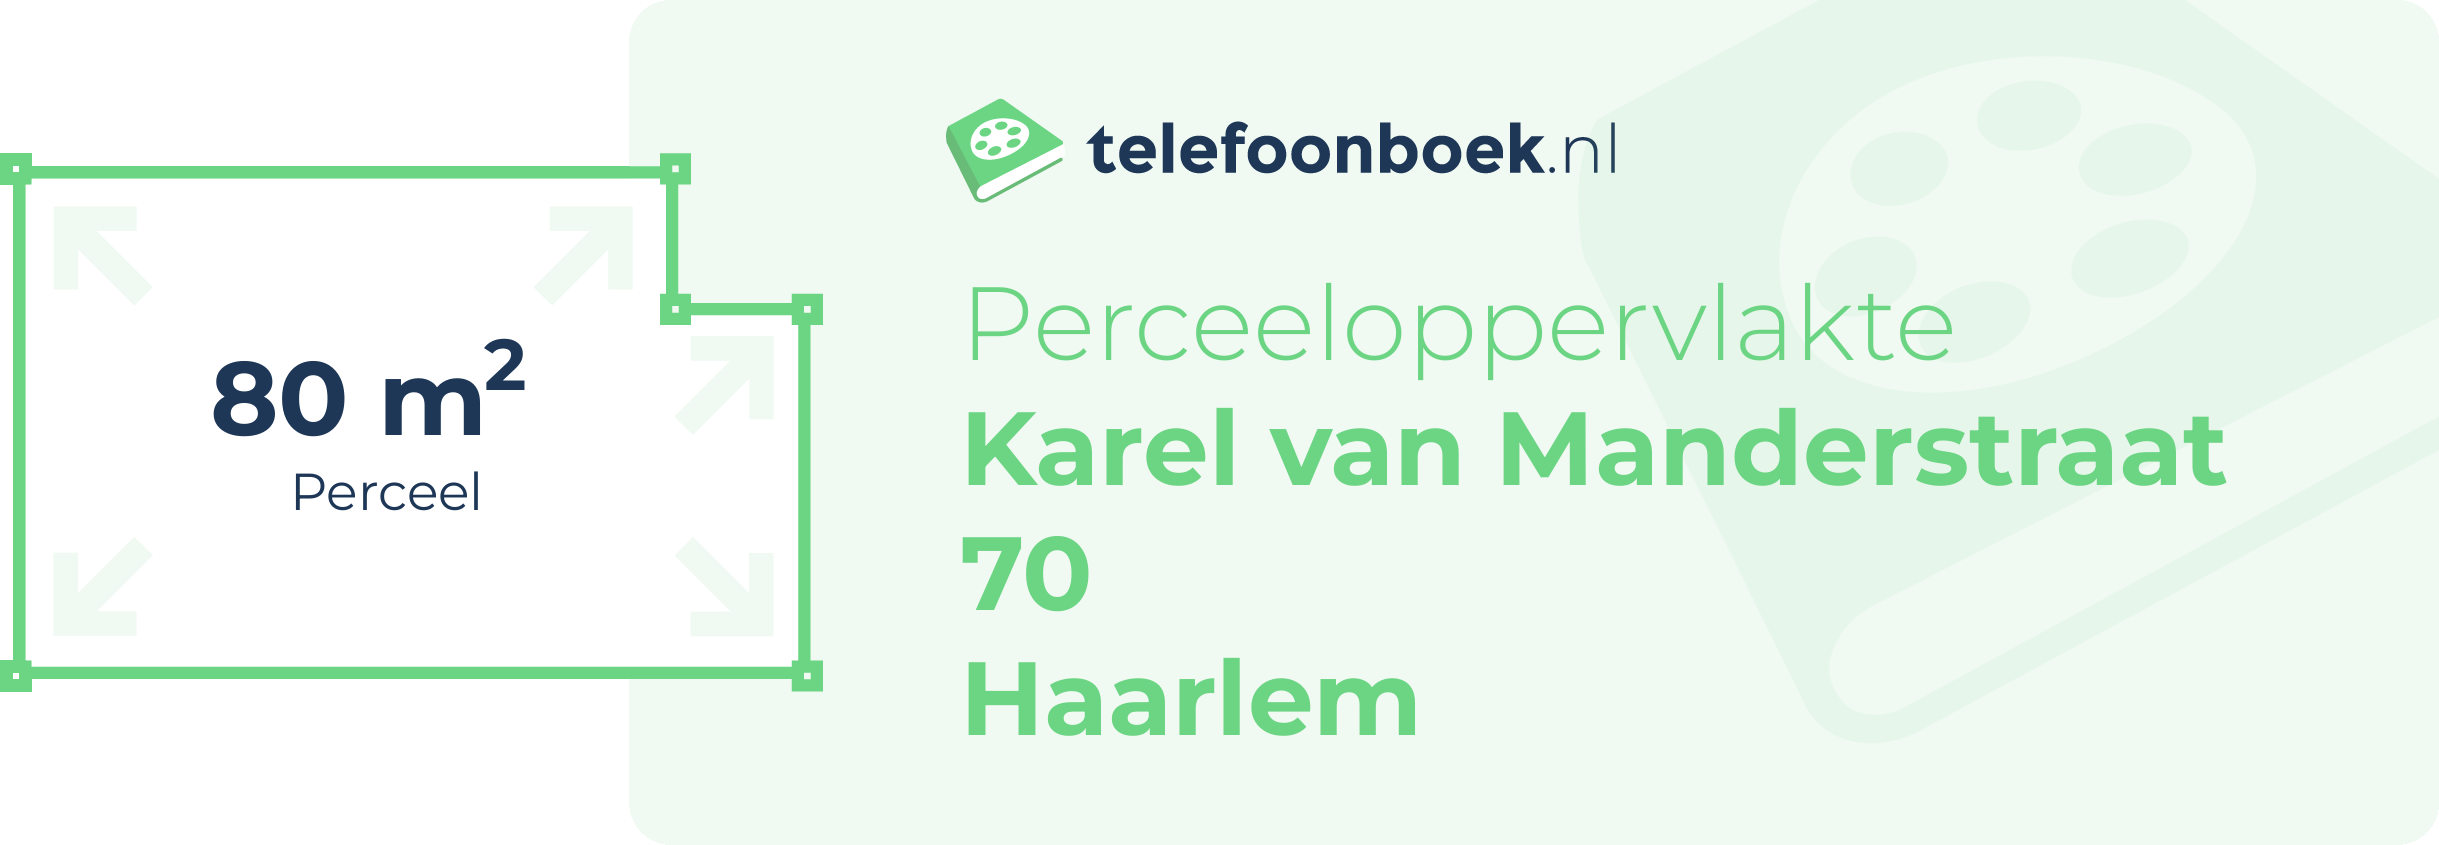 Perceeloppervlakte Karel Van Manderstraat 70 Haarlem